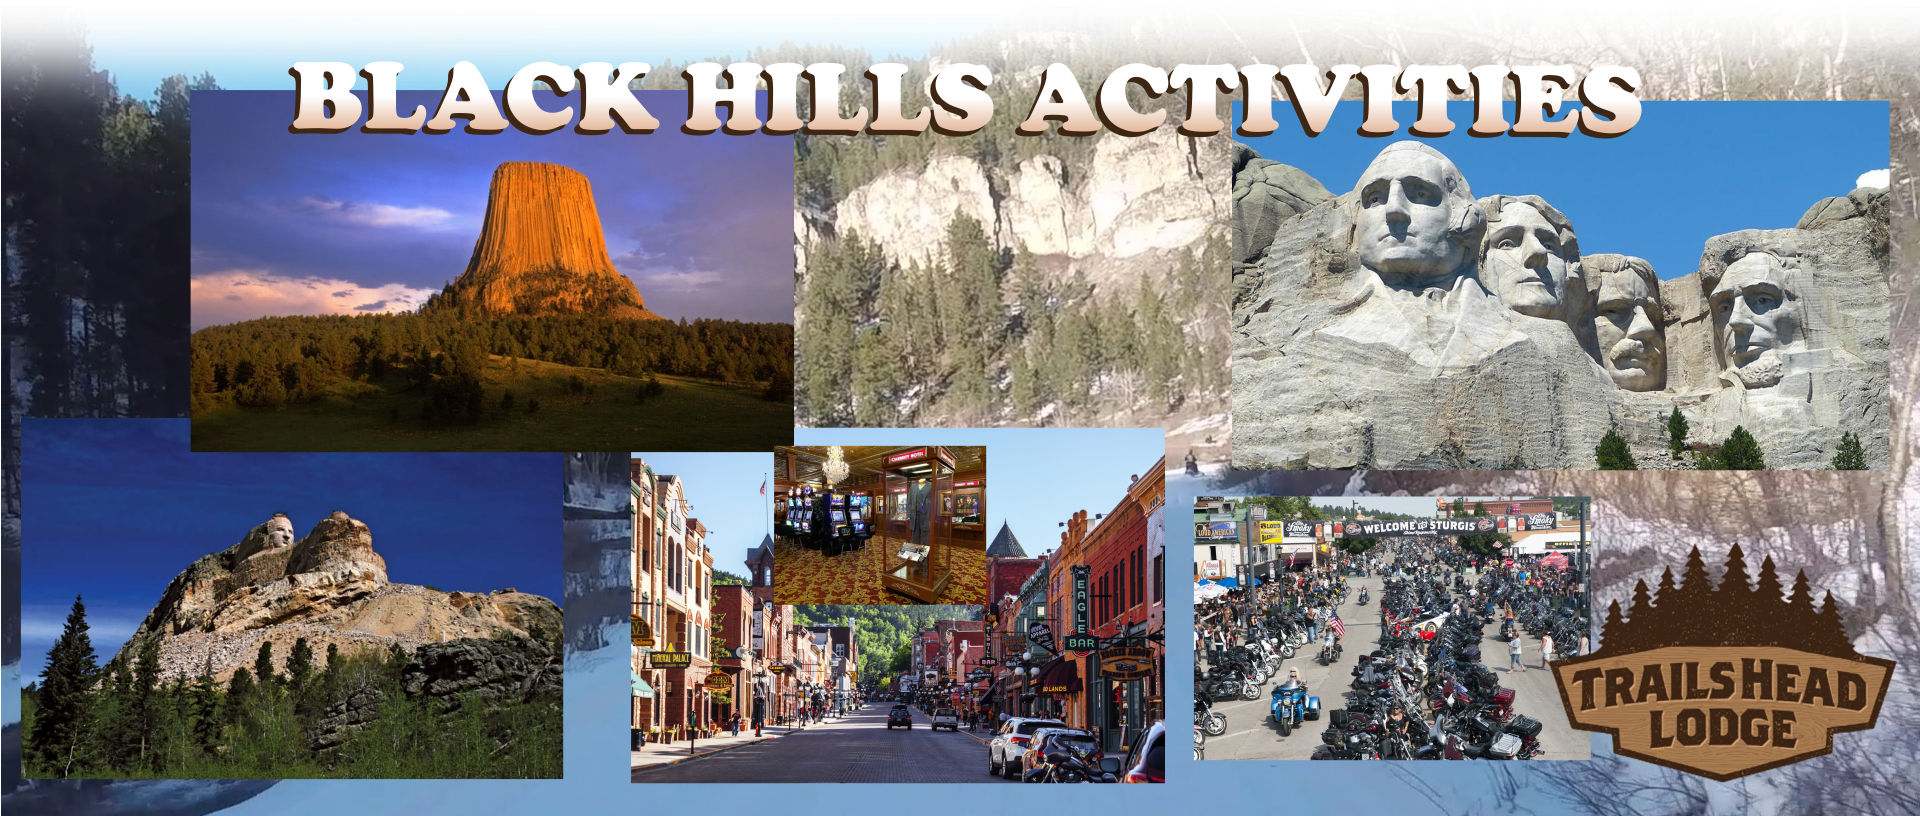 Black Hills Activities